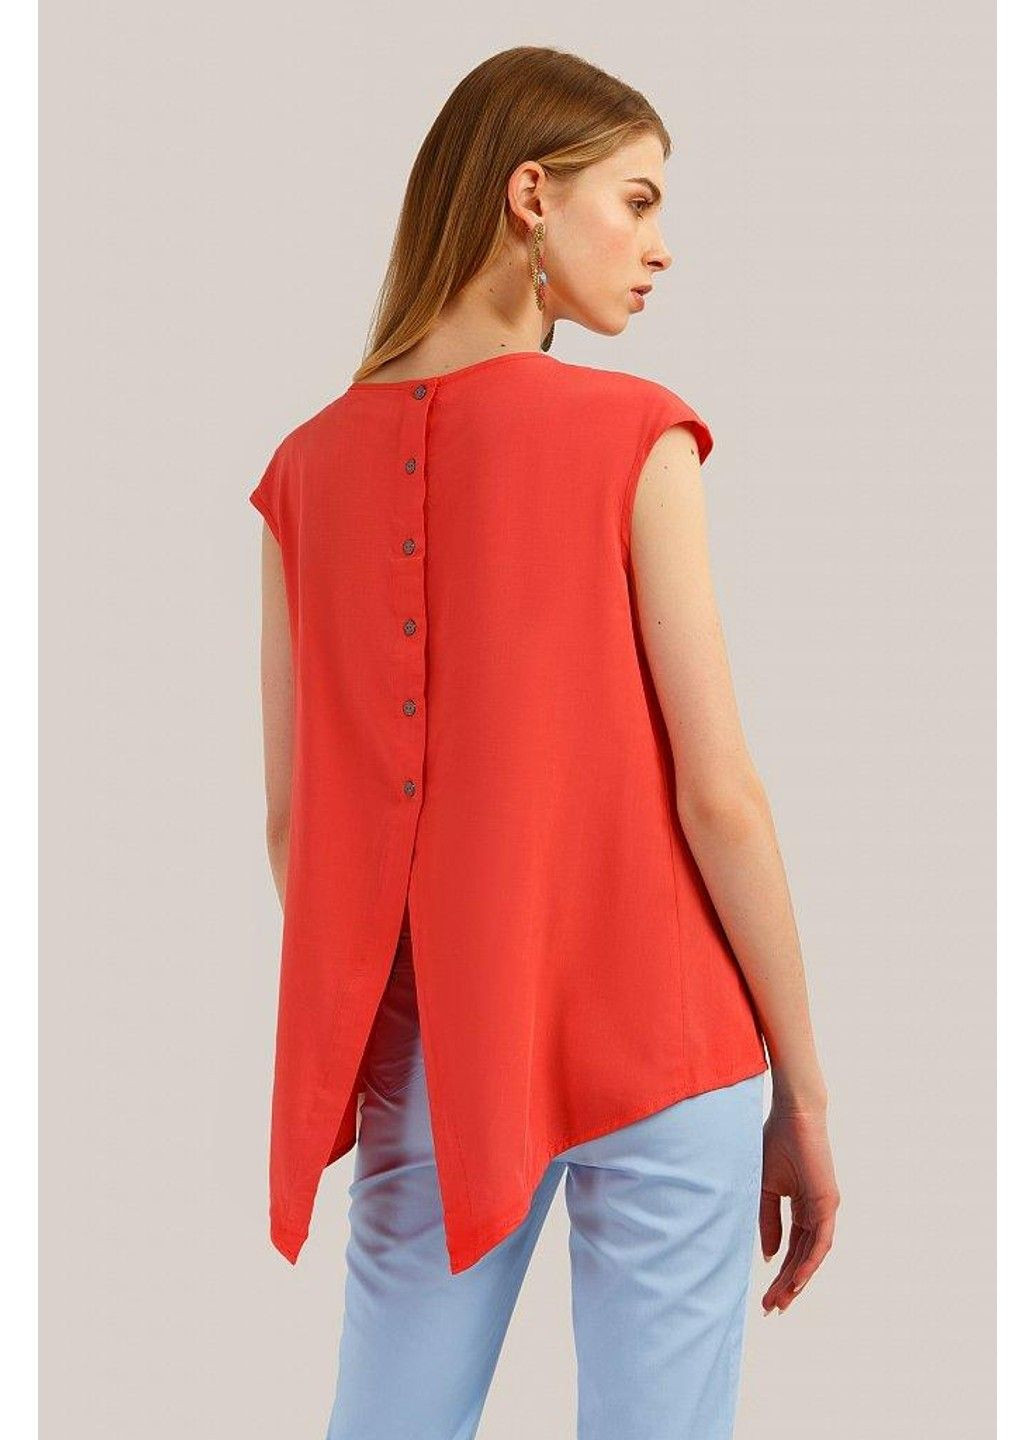 Красная летняя блузка s19-32071-326 Finn Flare